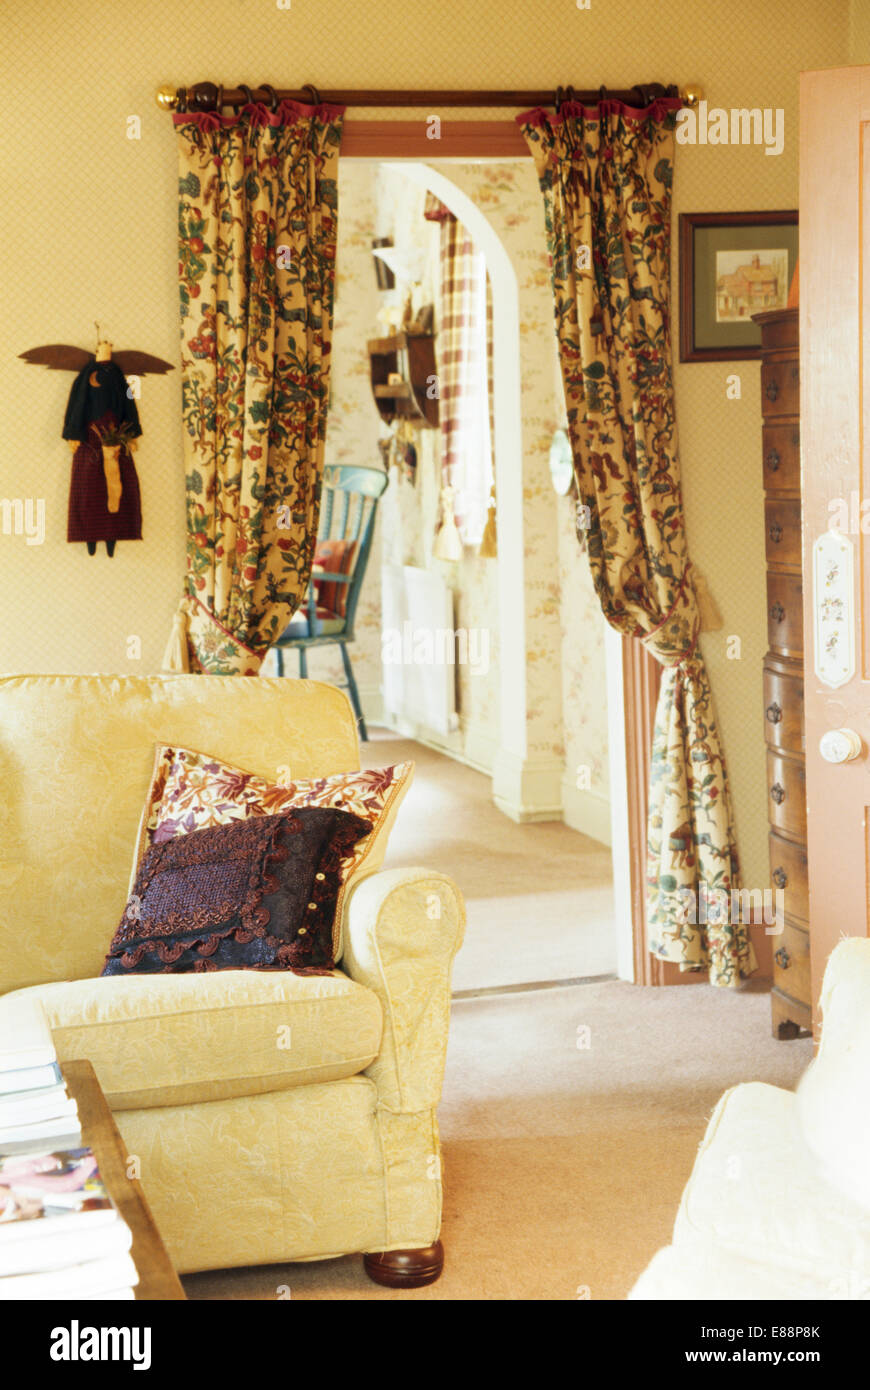 La crema divano in cottage soggiorno con tende a motivi geometrici sulla porta di ingresso alla sala piccola Foto Stock